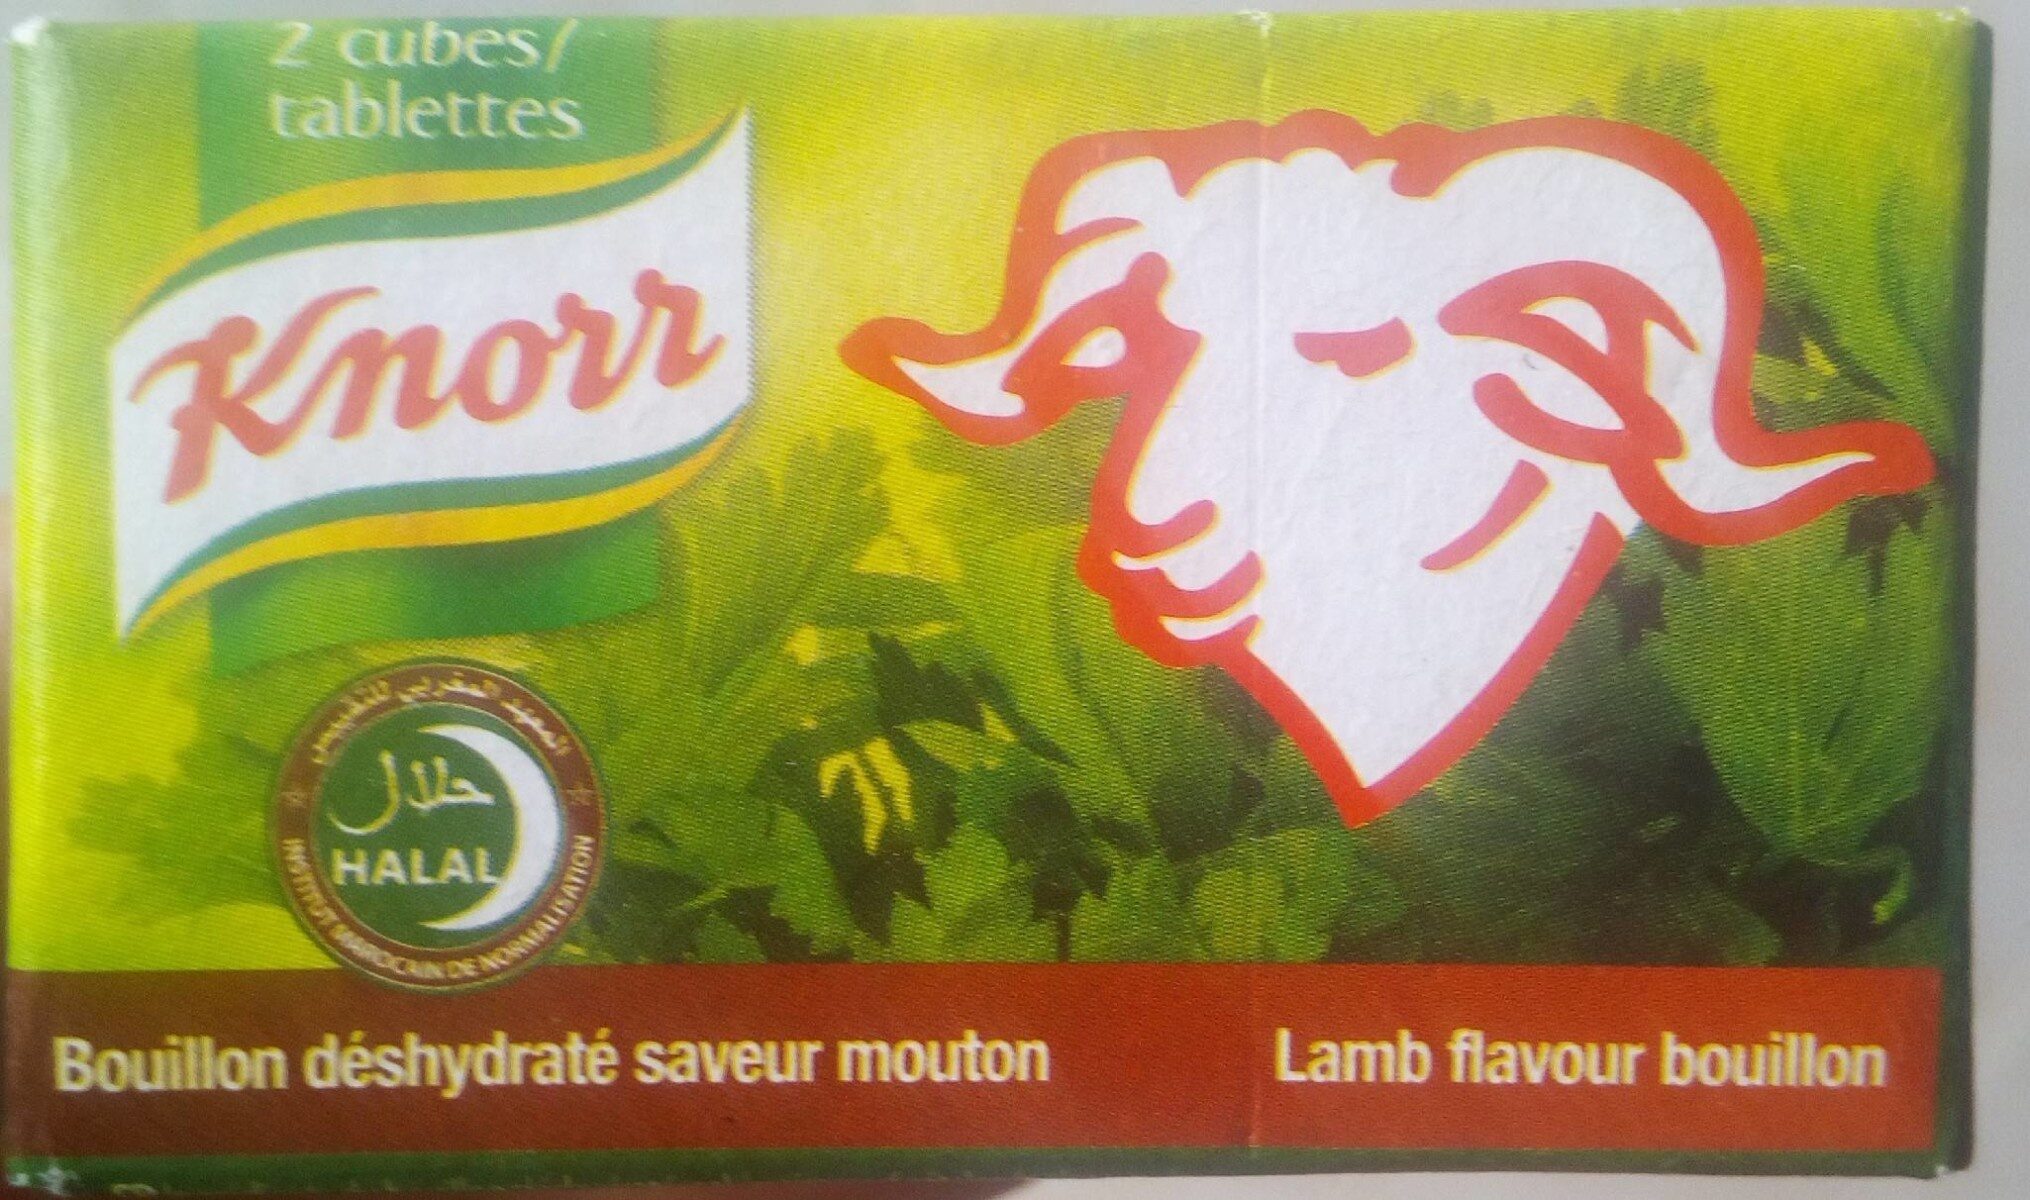 Lamb flavour bouillon - Product - es